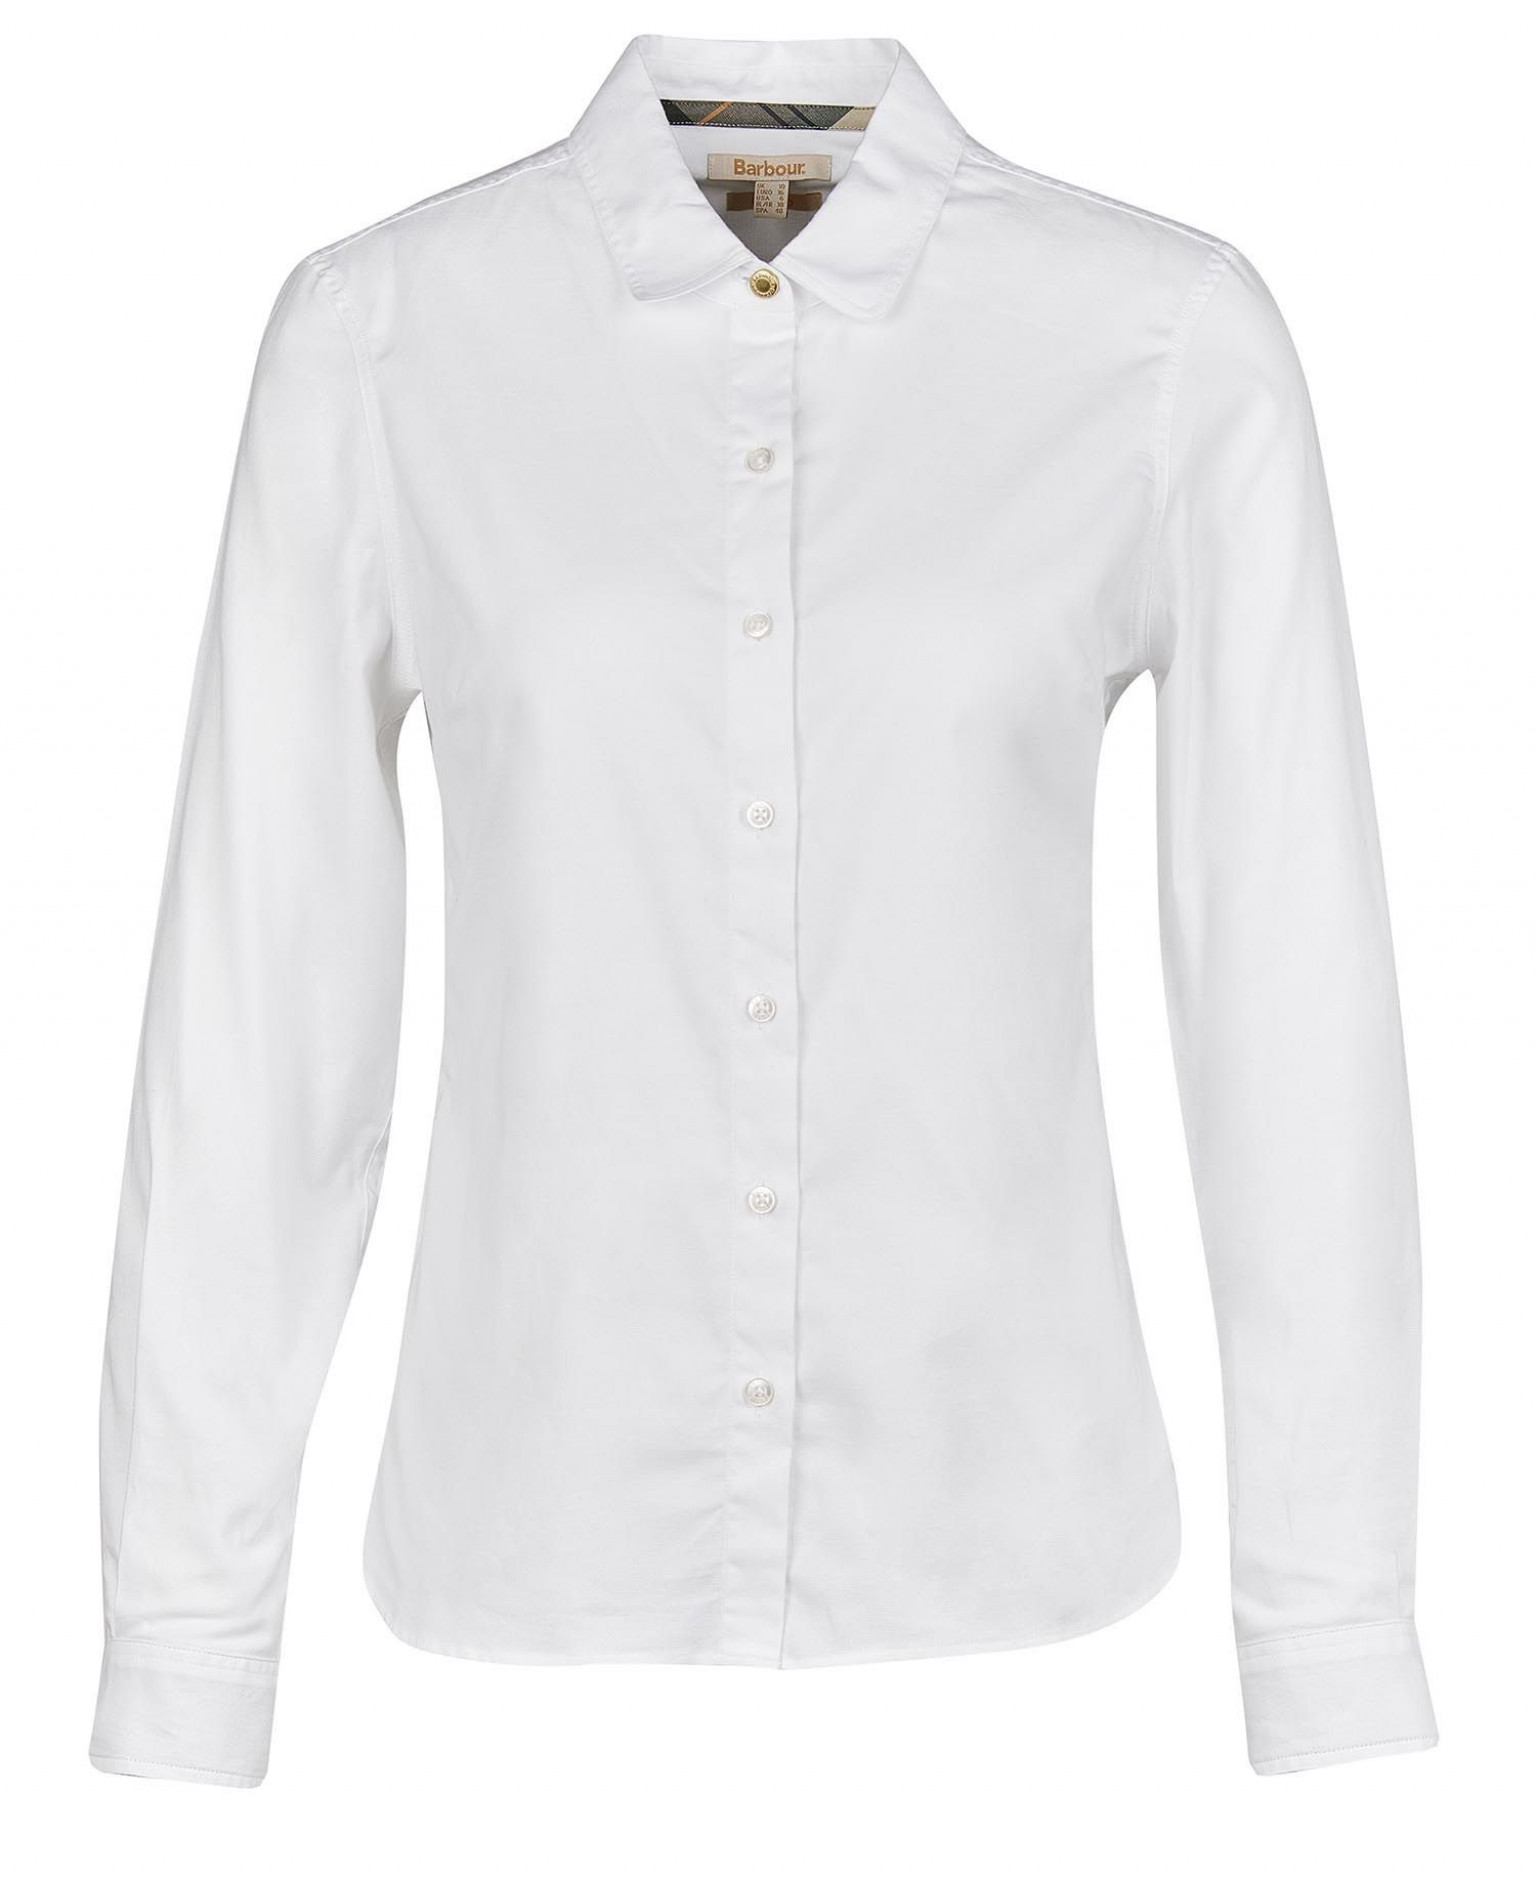 Barbour Pearson Shirt White